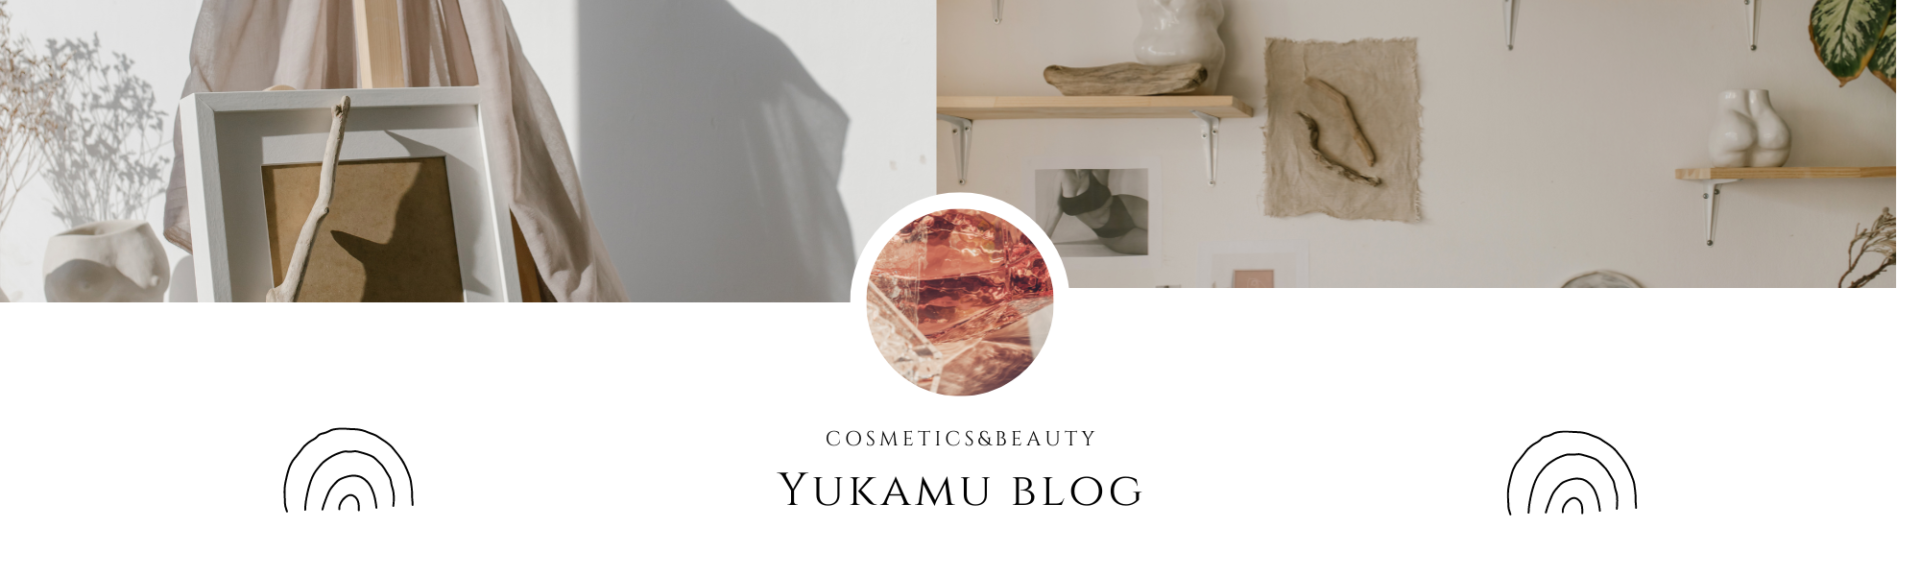 Yukamu blog